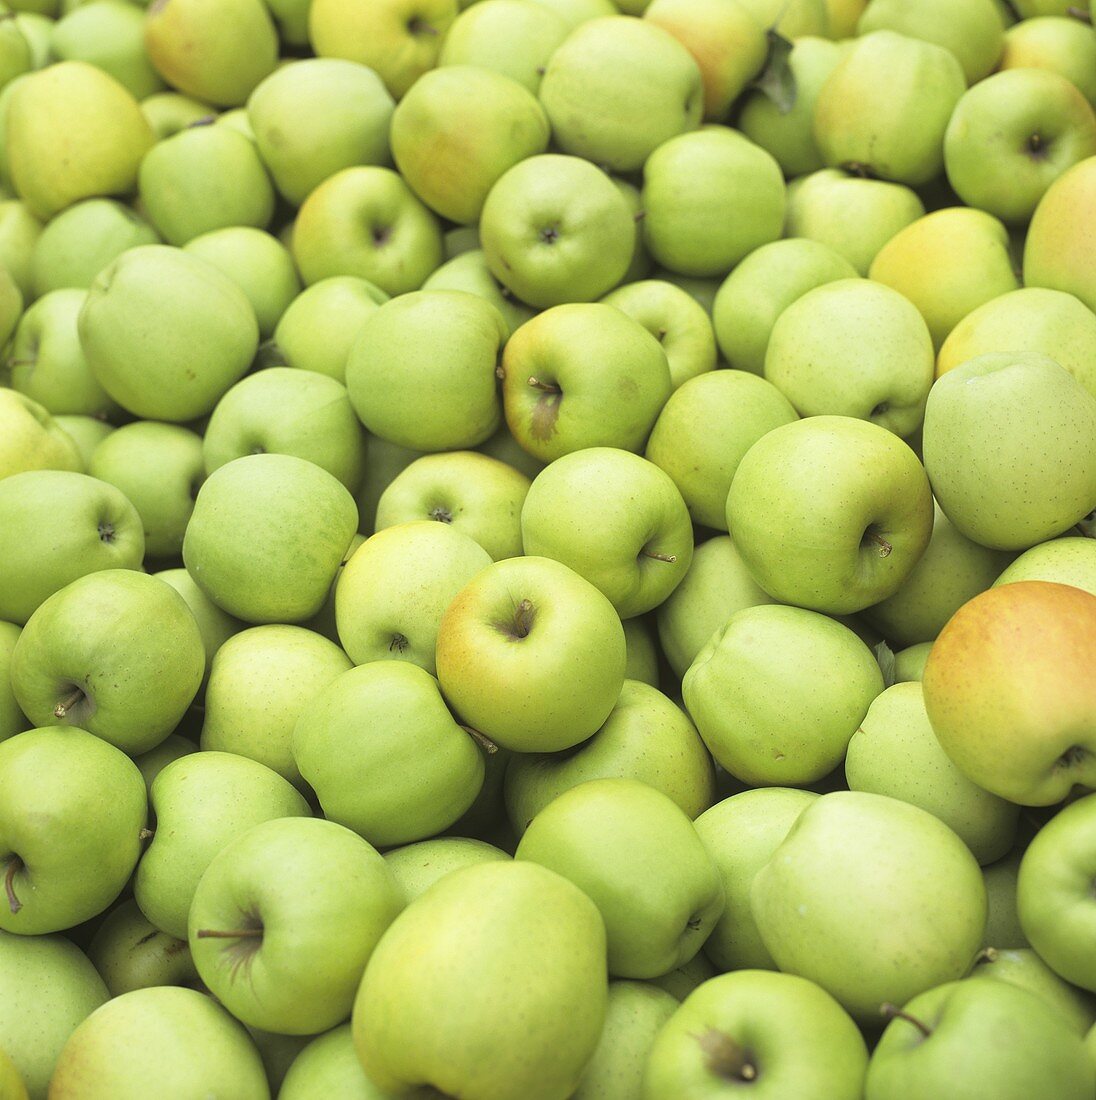 Many Green Apples (Full Frame)